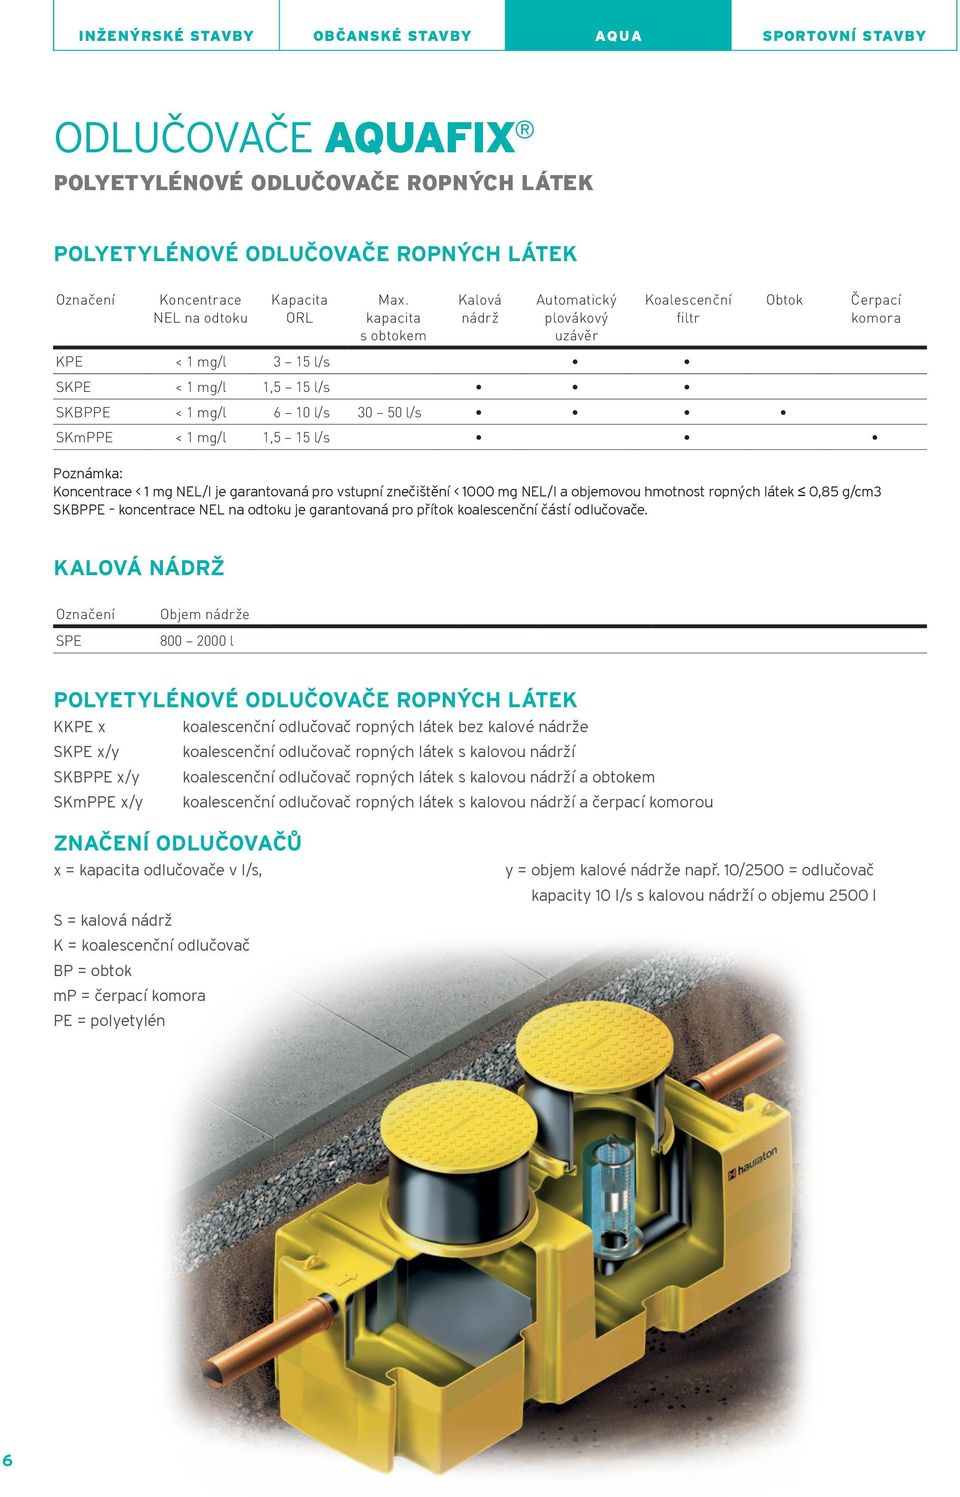 kapacita s obtokem Kalová nádrž Automatický plovákový uzávěr Koalescenční filtr Kpe < 1 mg/l 3 15 l/s skpe < 1 mg/l 1,5 15 l/s skbppe < 1 mg/l 6 10 l/s 30 50 l/s skmppe < 1 mg/l 1,5 15 l/s Poznámka: